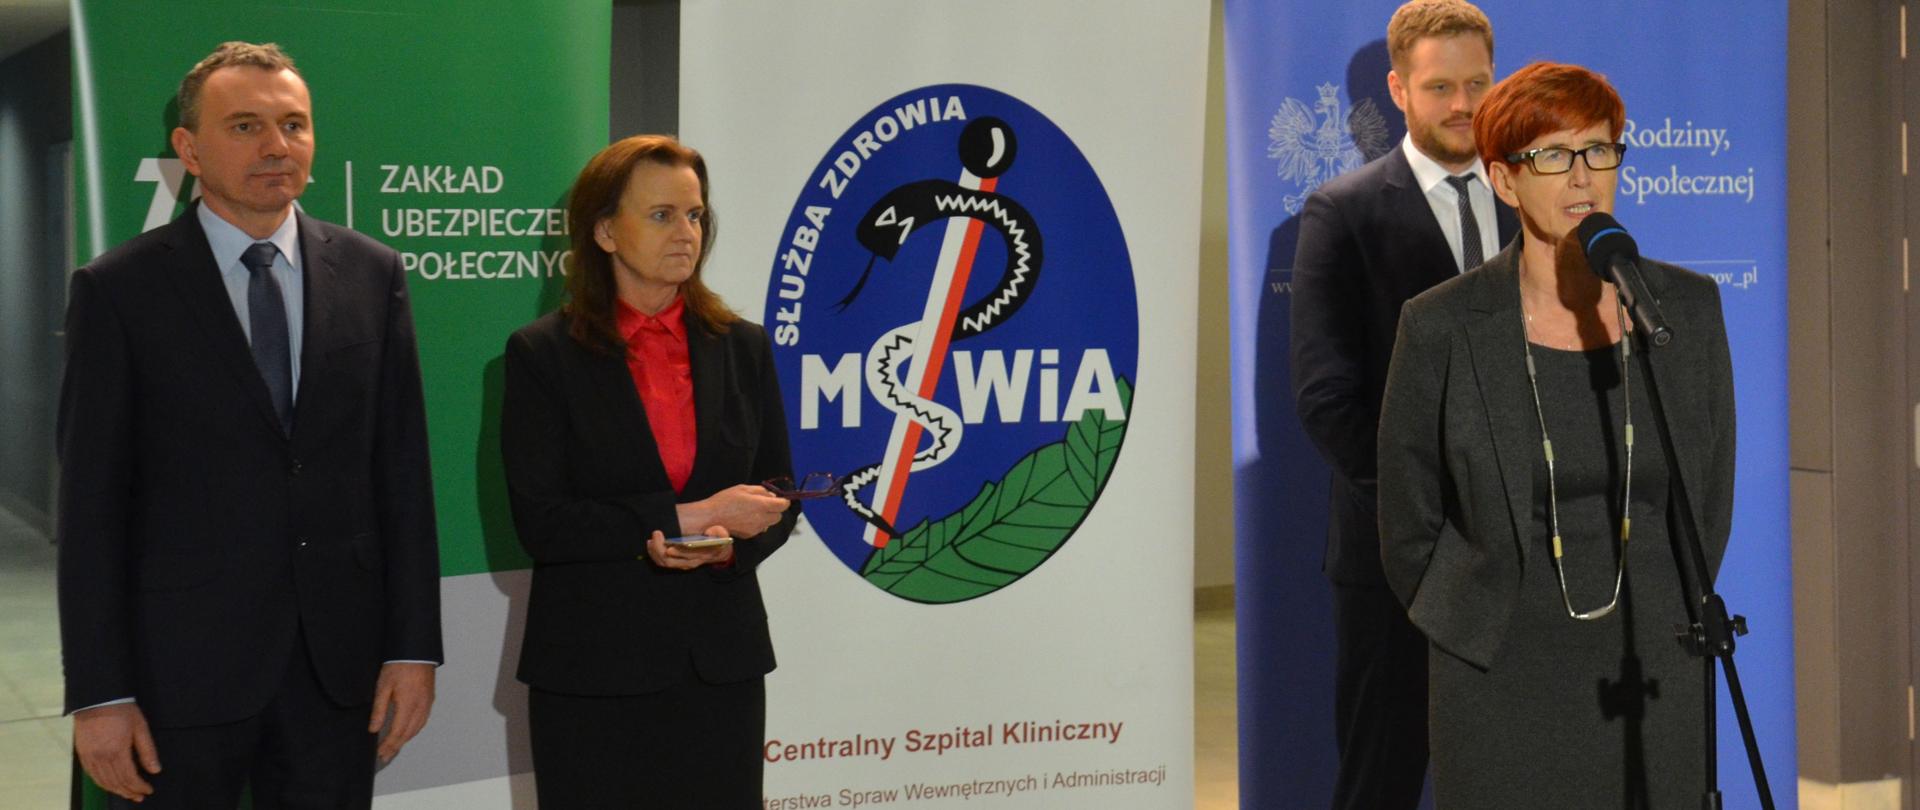 W szpitalu MSWiA w Warszawie odbył się briefing prasowy z udziałem Ministerstwa Rodziny, ZUS, Ministerstwa Zdrowia oraz dyrekcji szpitala. 